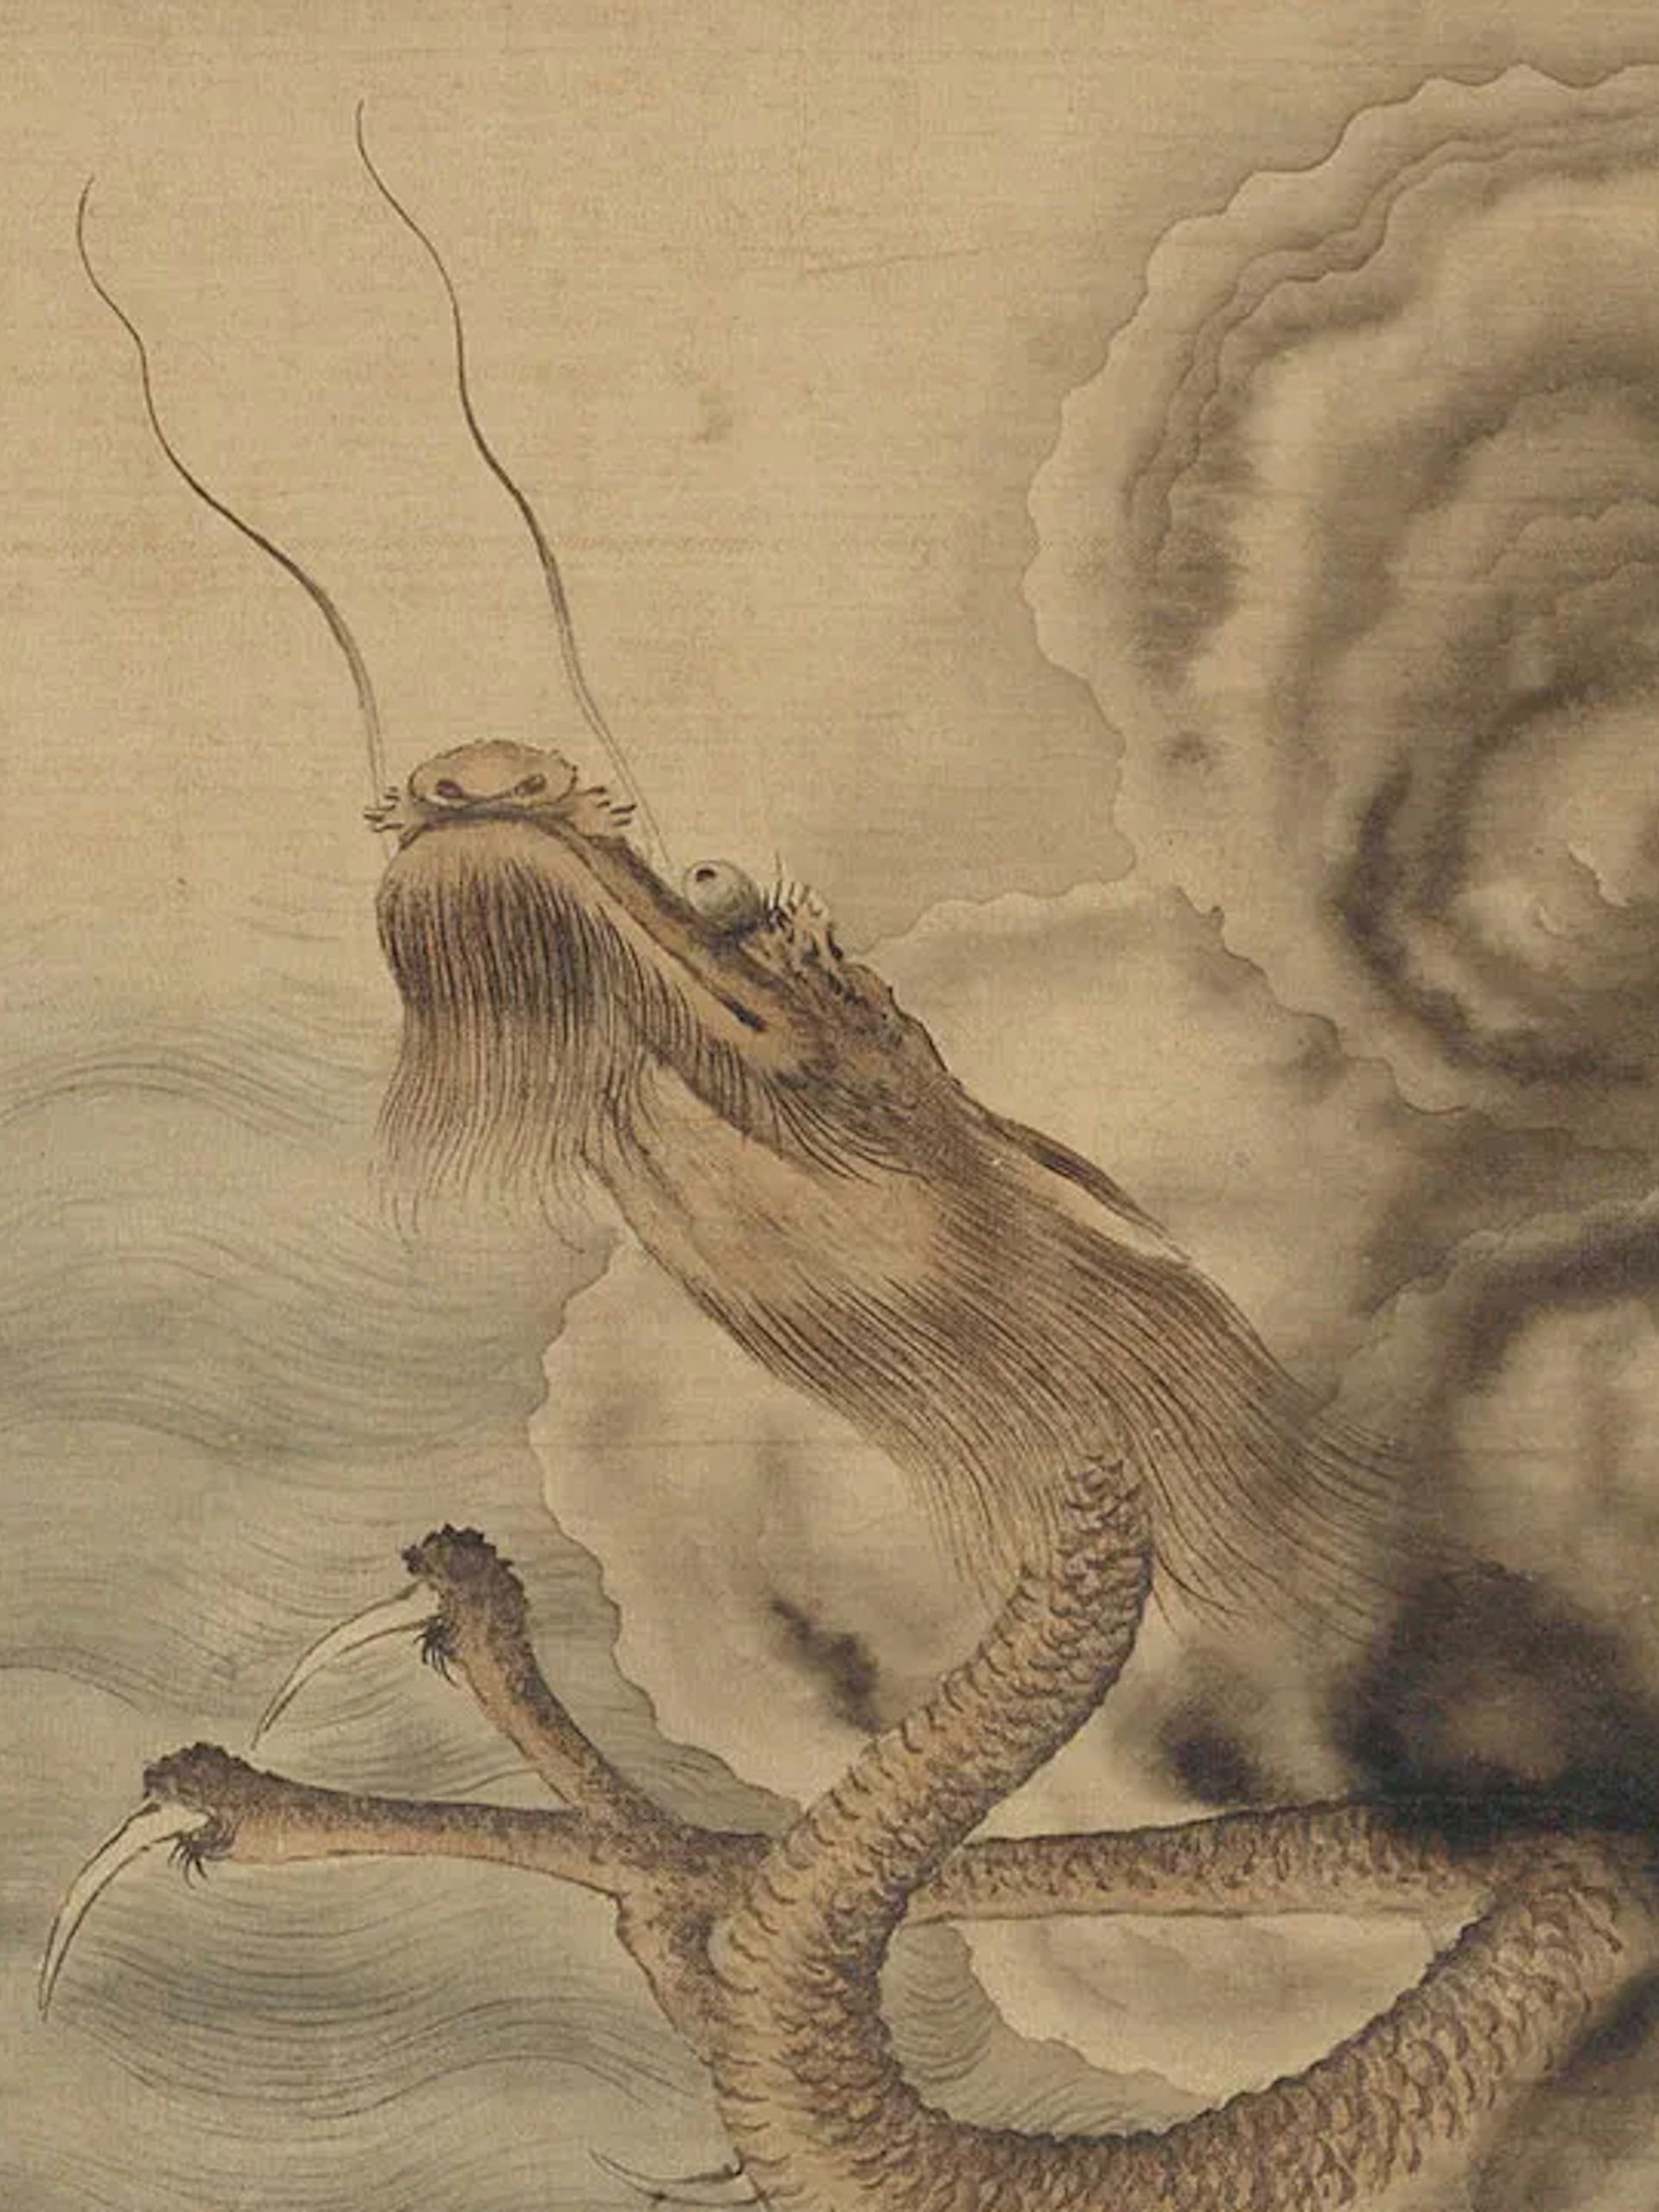 Chinese Mythology Hero Image